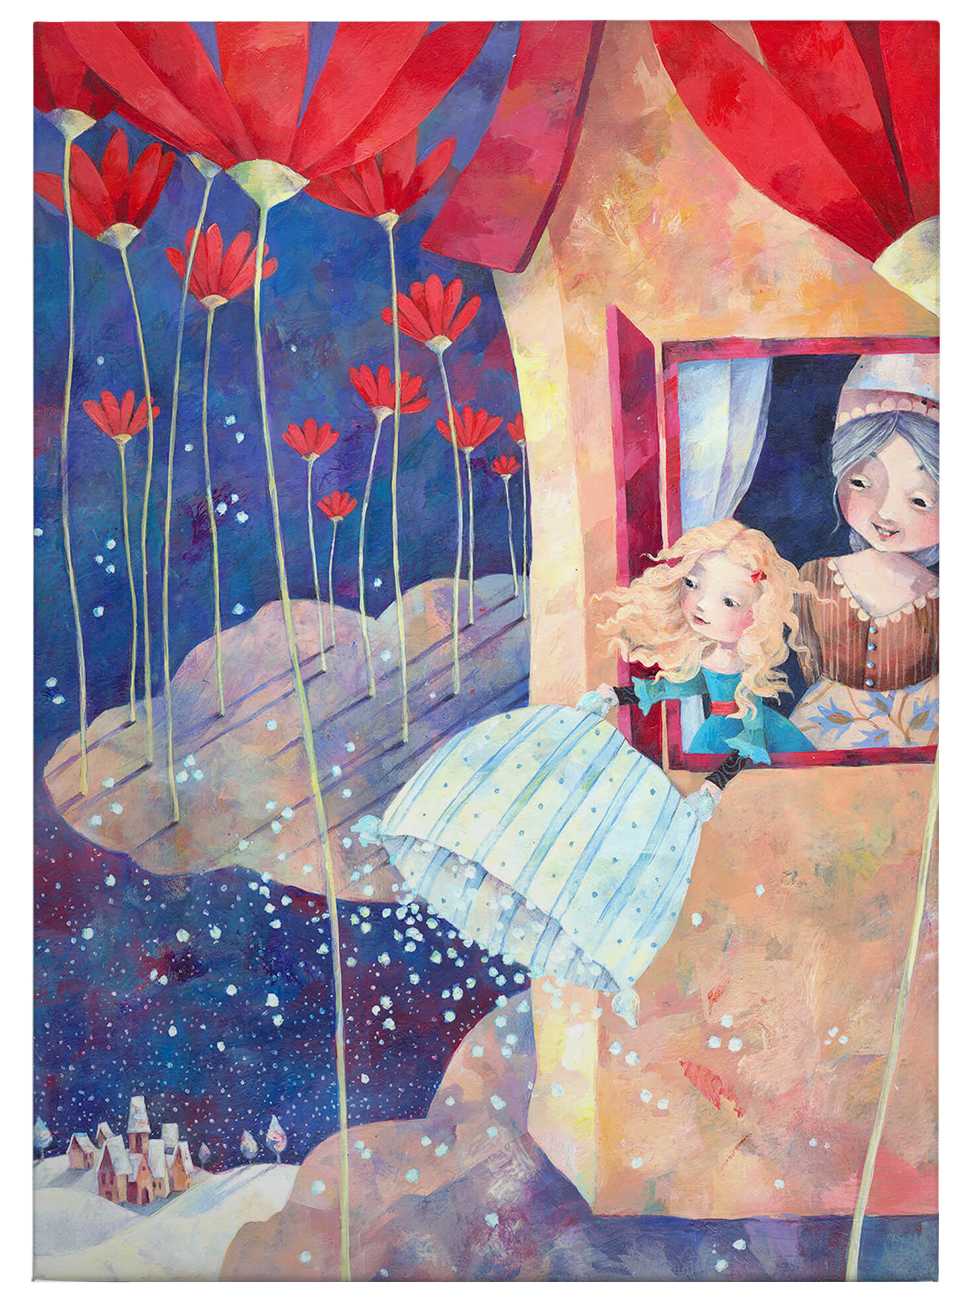             Cuadro en lienzo Fairytale Frau Holle, by Blanz - 0,50 m x 0,70 m
        